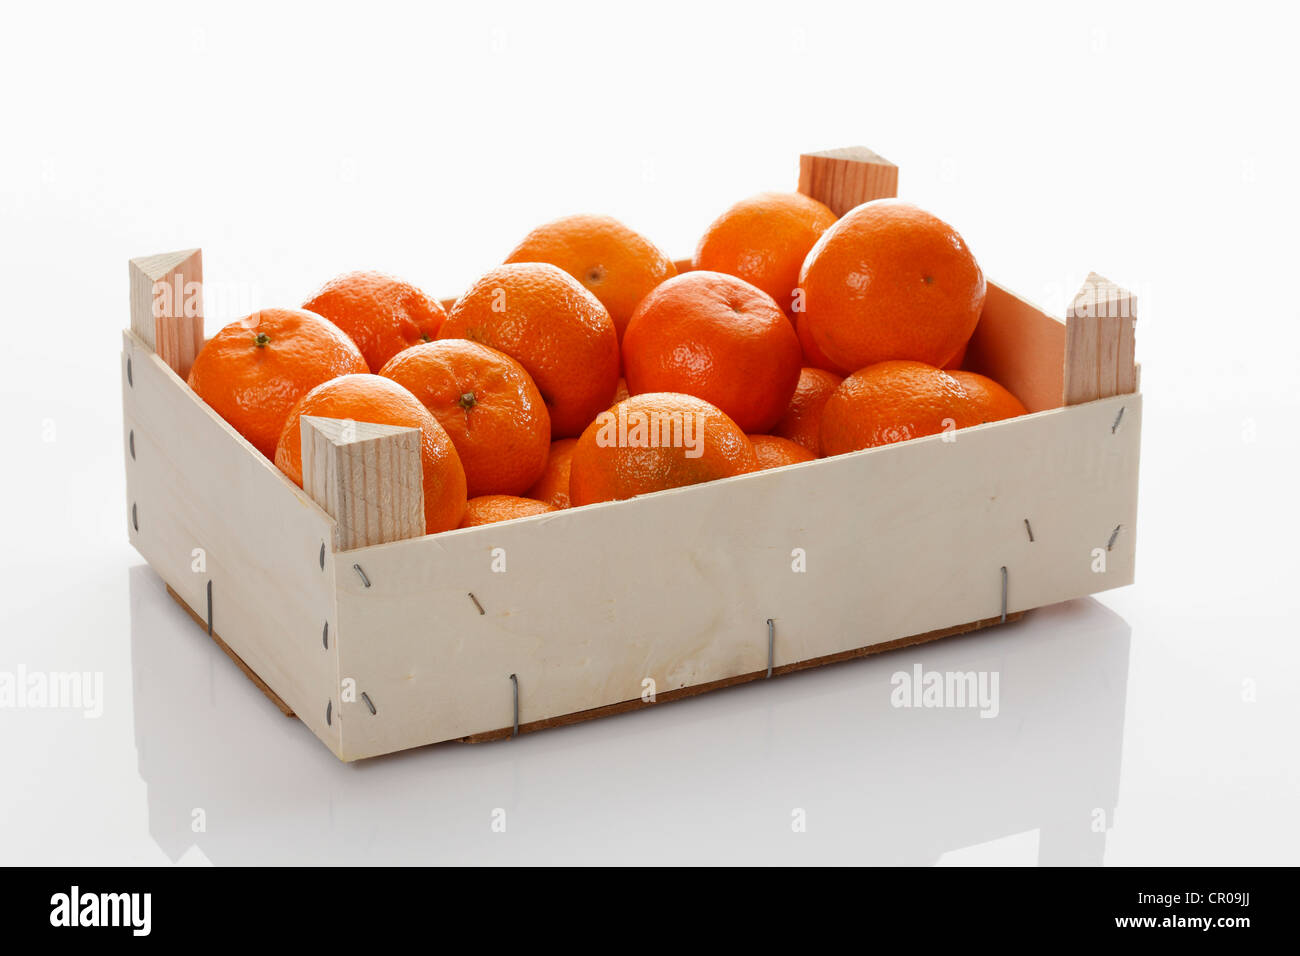 Crate of Mandarins (Citrus reticulata) Stock Photo